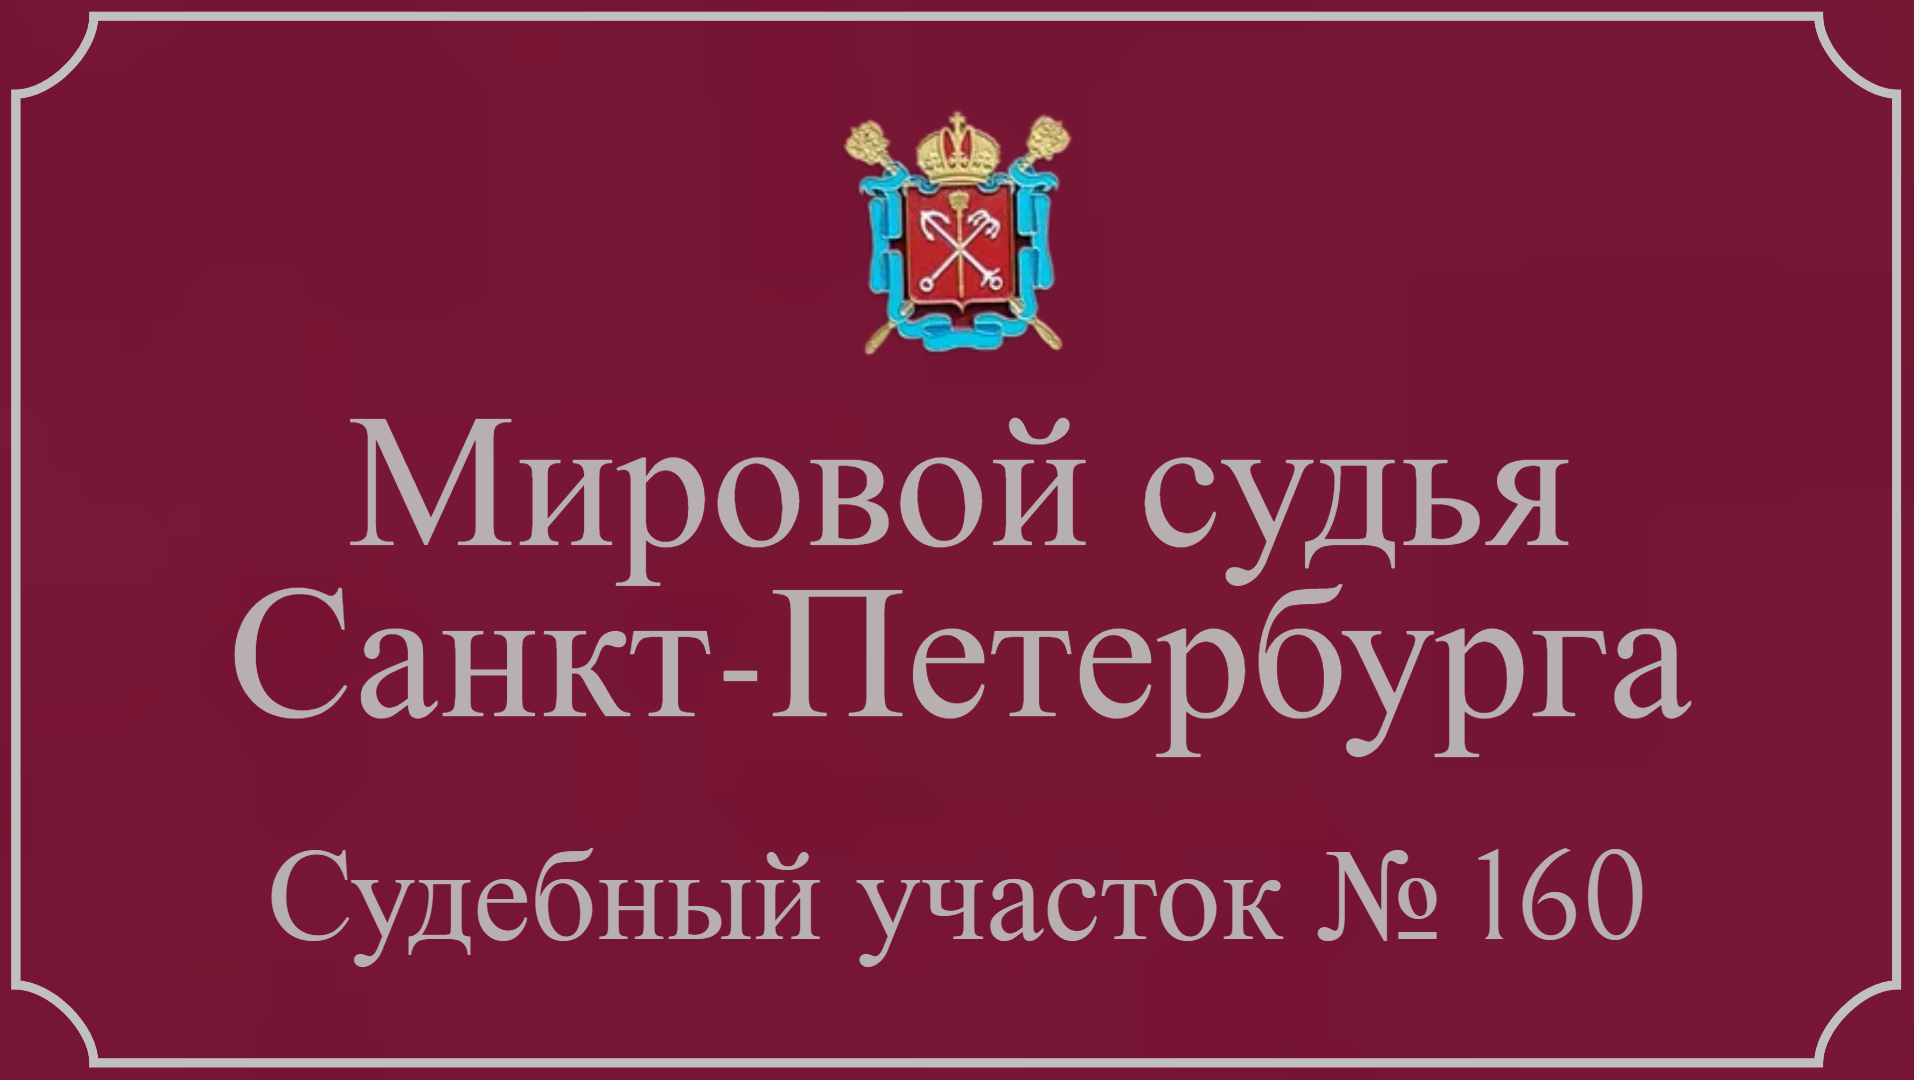 Информация по 160 судебному участку в Санкт-Петербурге.